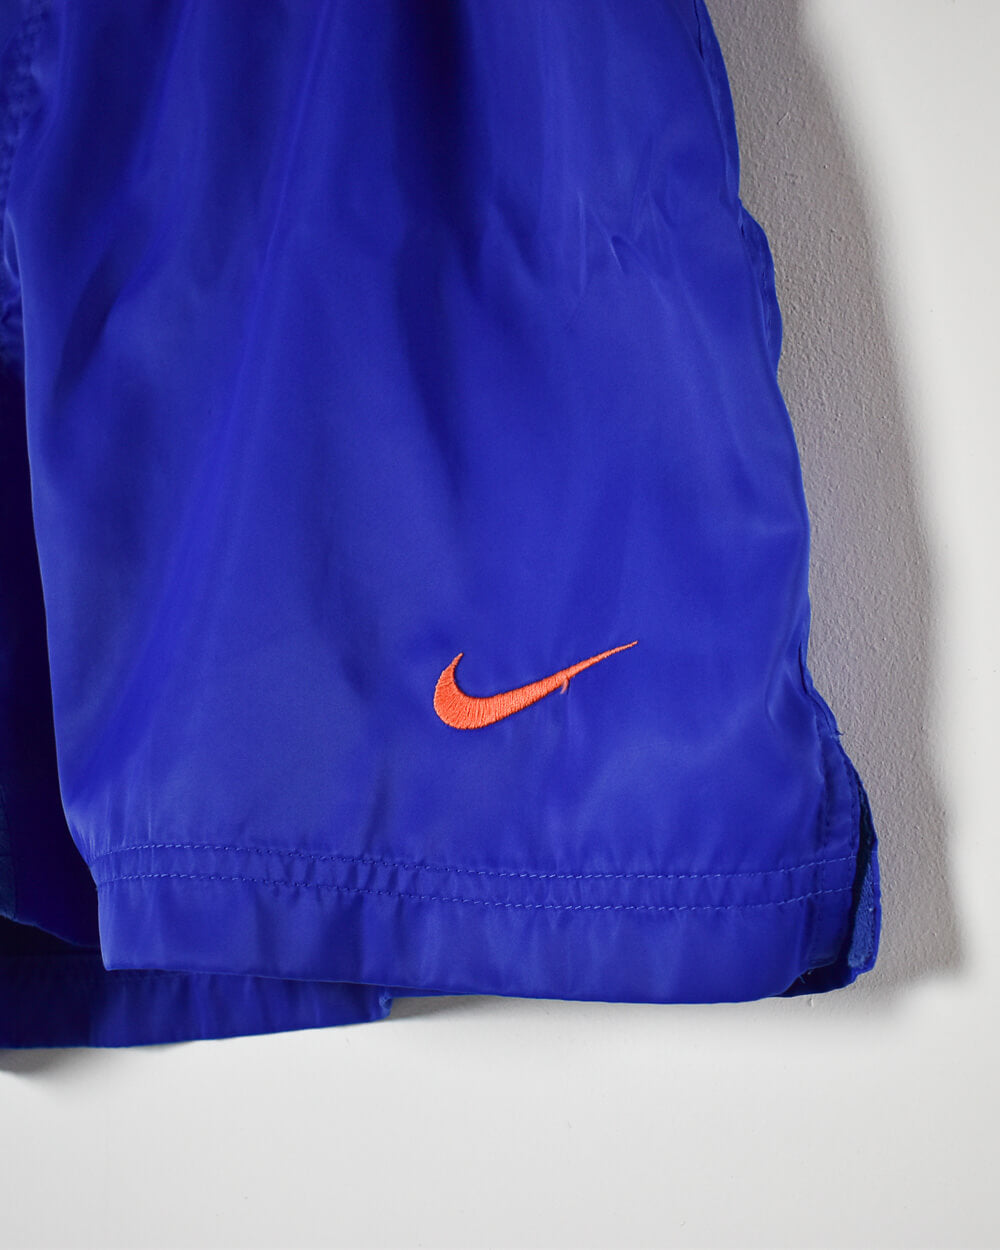 Blue Nike Shorts - Large